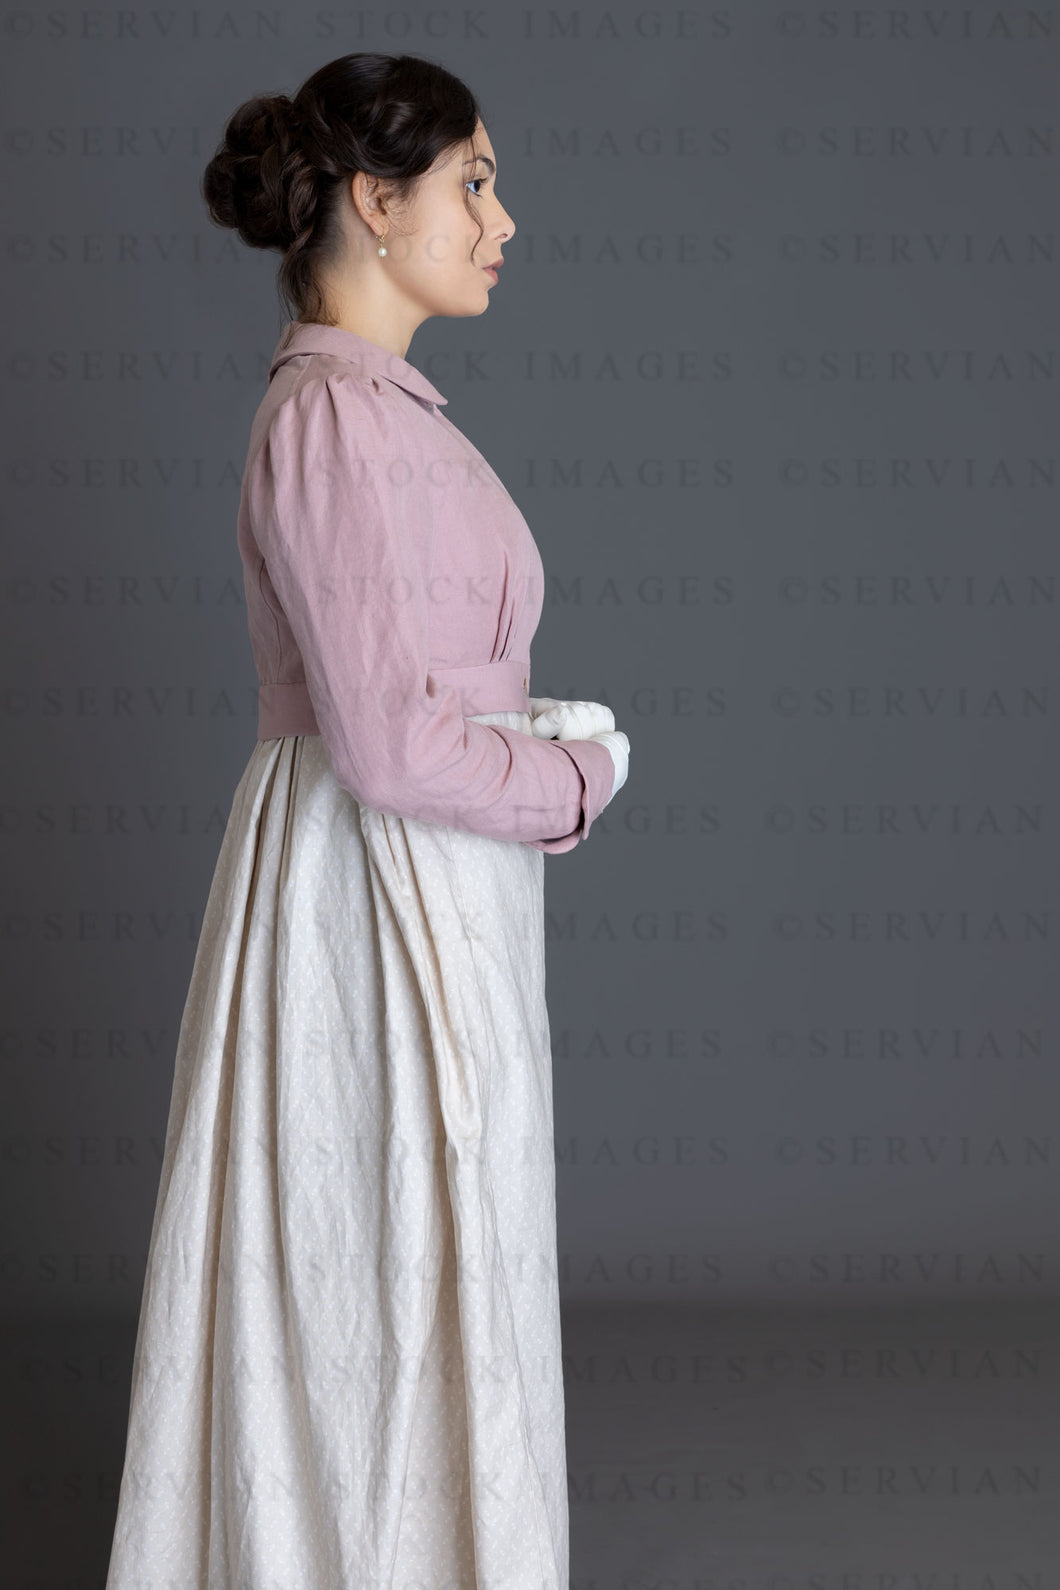 Regency woman in a printed cotton dress (Sophia 4450)